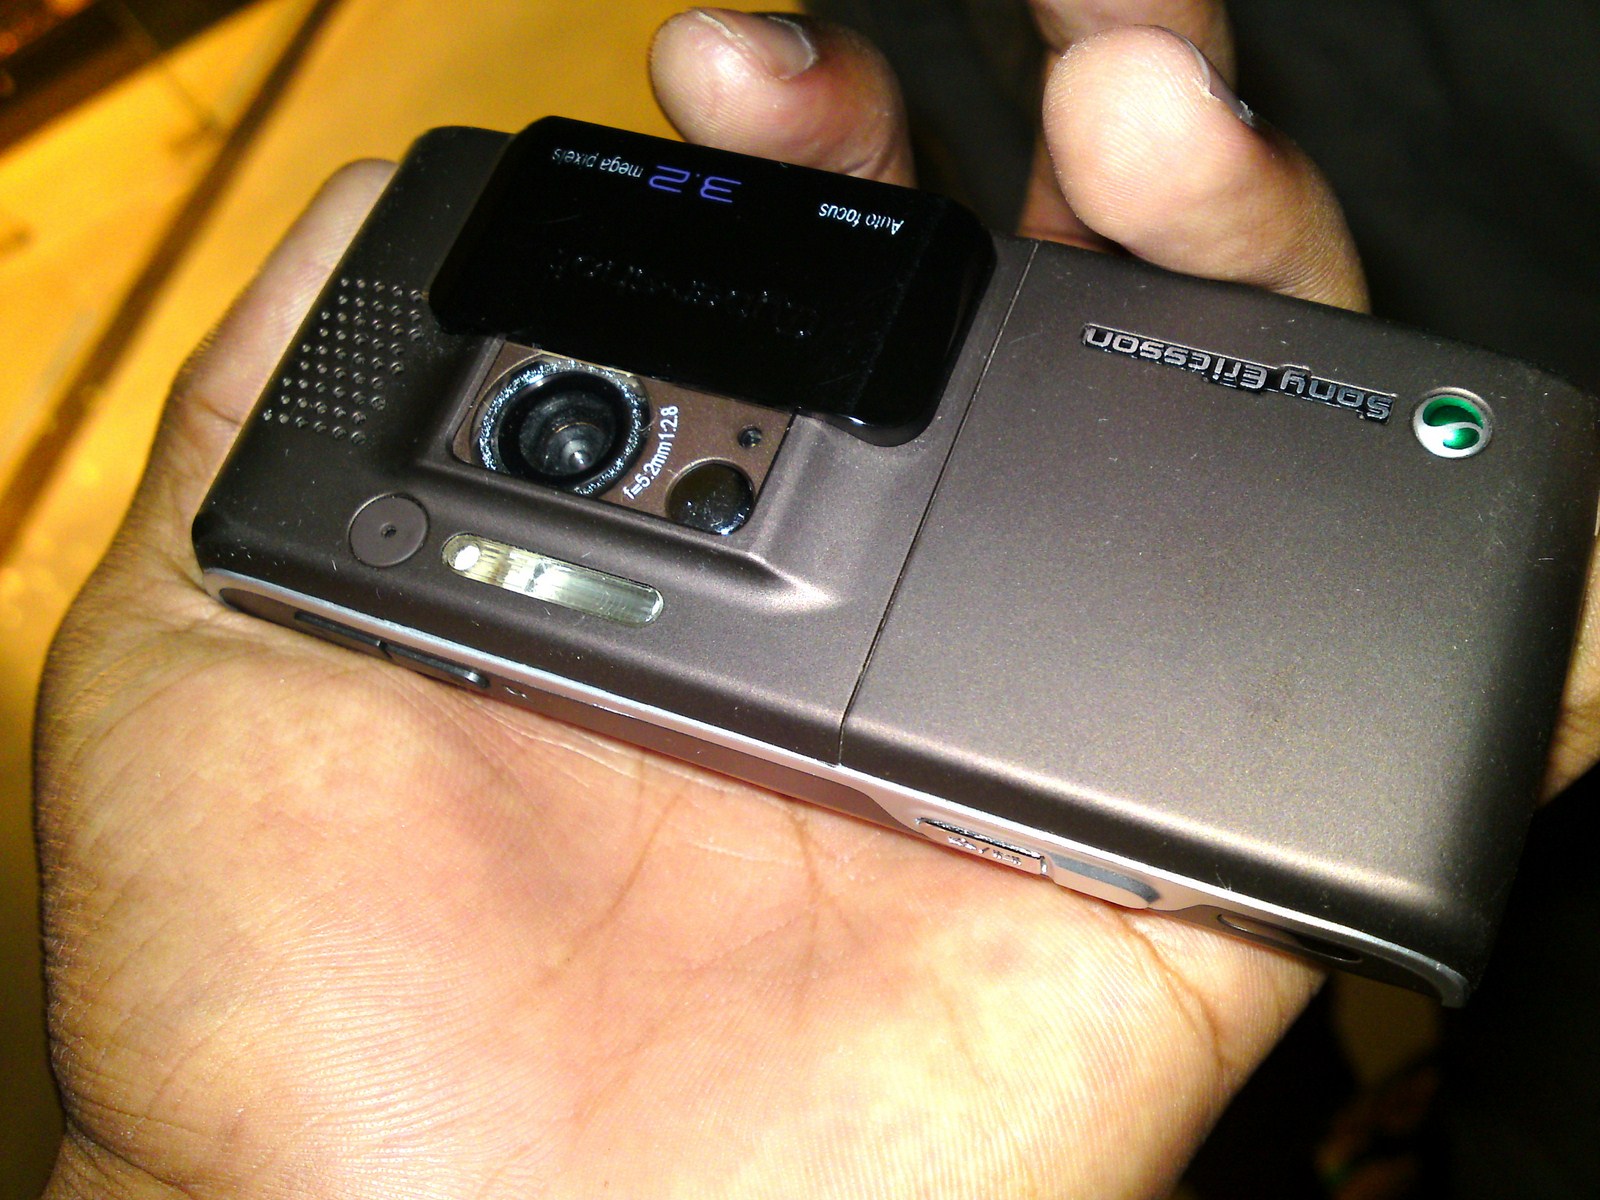 Sony Ericsson K800i large image 0